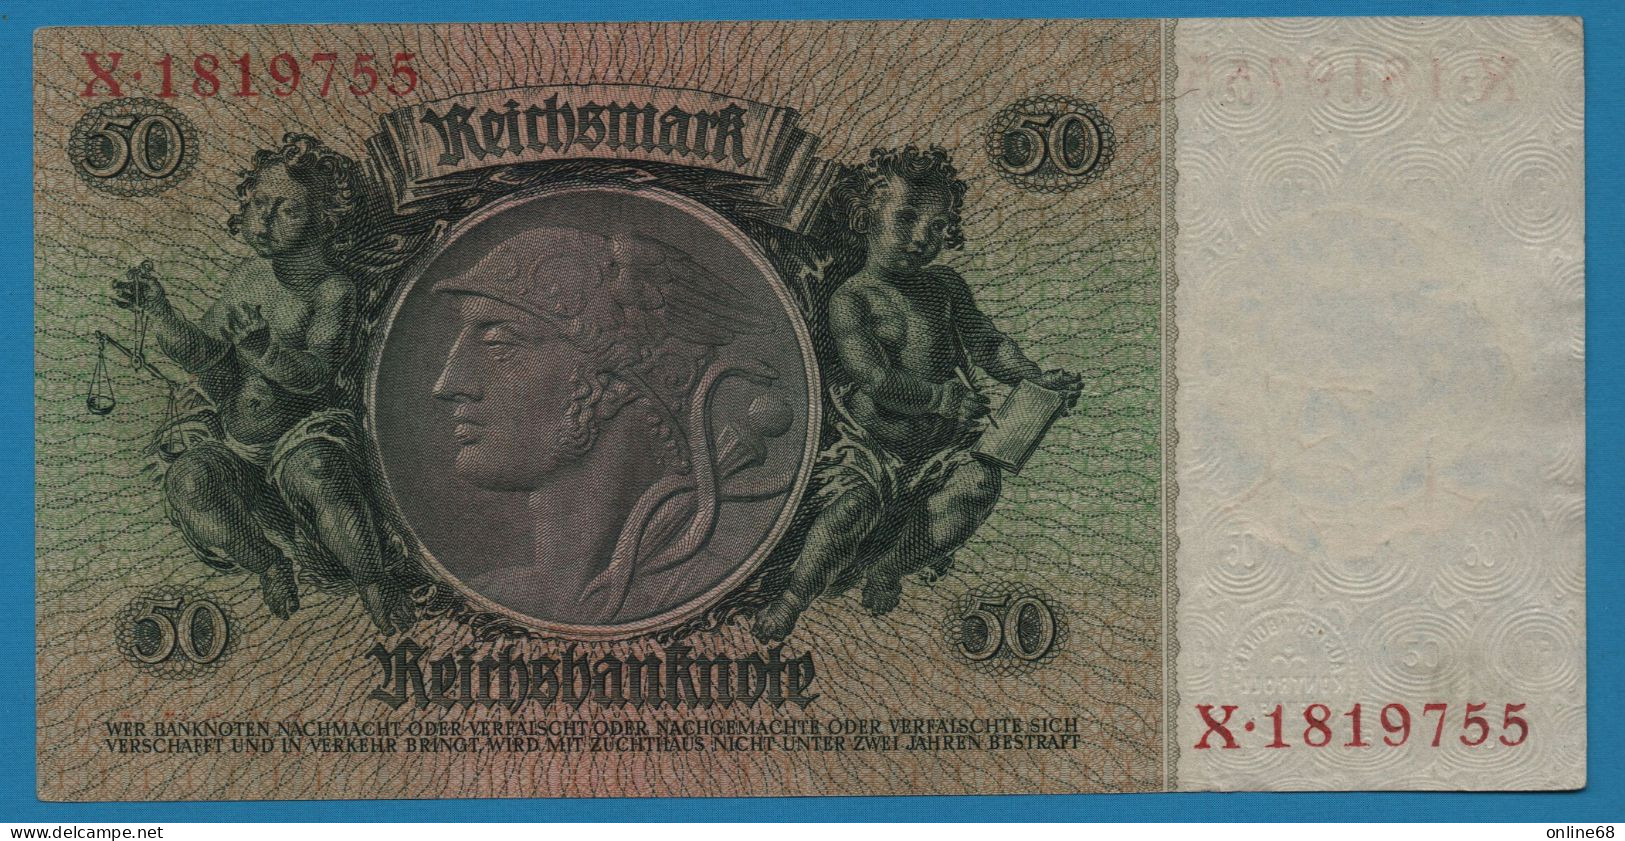 DEUTSCHES REICH 50 REICHSMARK 30.03.1933 LETTER I # X.1819755 P# 182a  David Hansemann - 50 Reichsmark